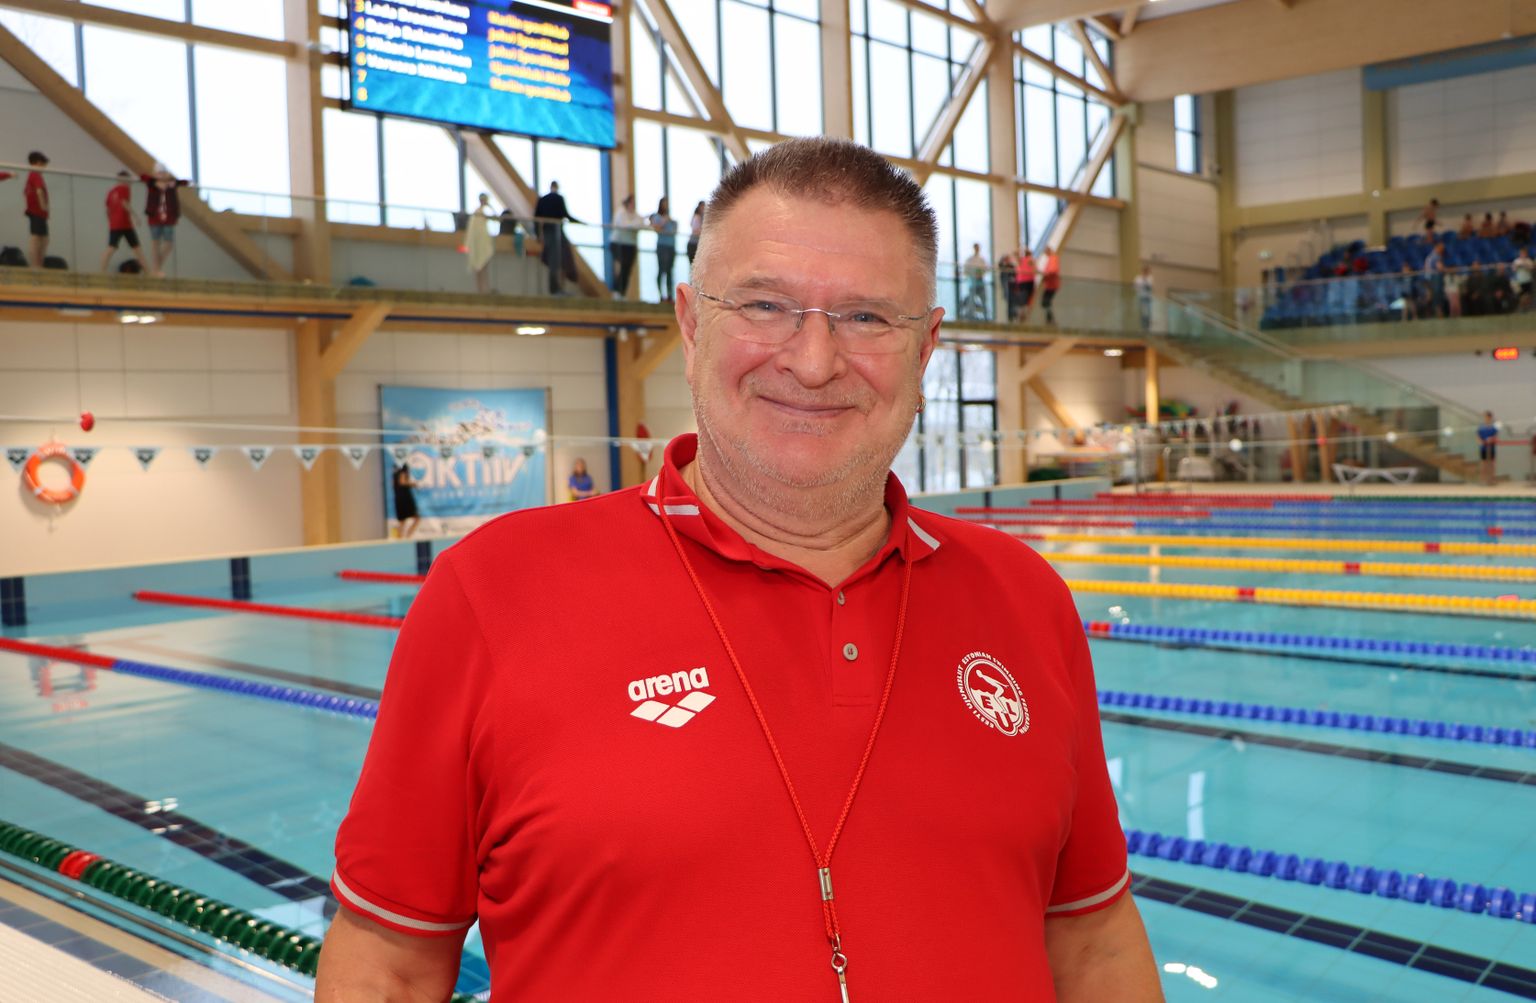 Сергей Михайлов очень рад, что в Кохтла-Ярве теперь отличные условия не только для тренировок пловцов, но и для проведения соревнований высокого уровня.